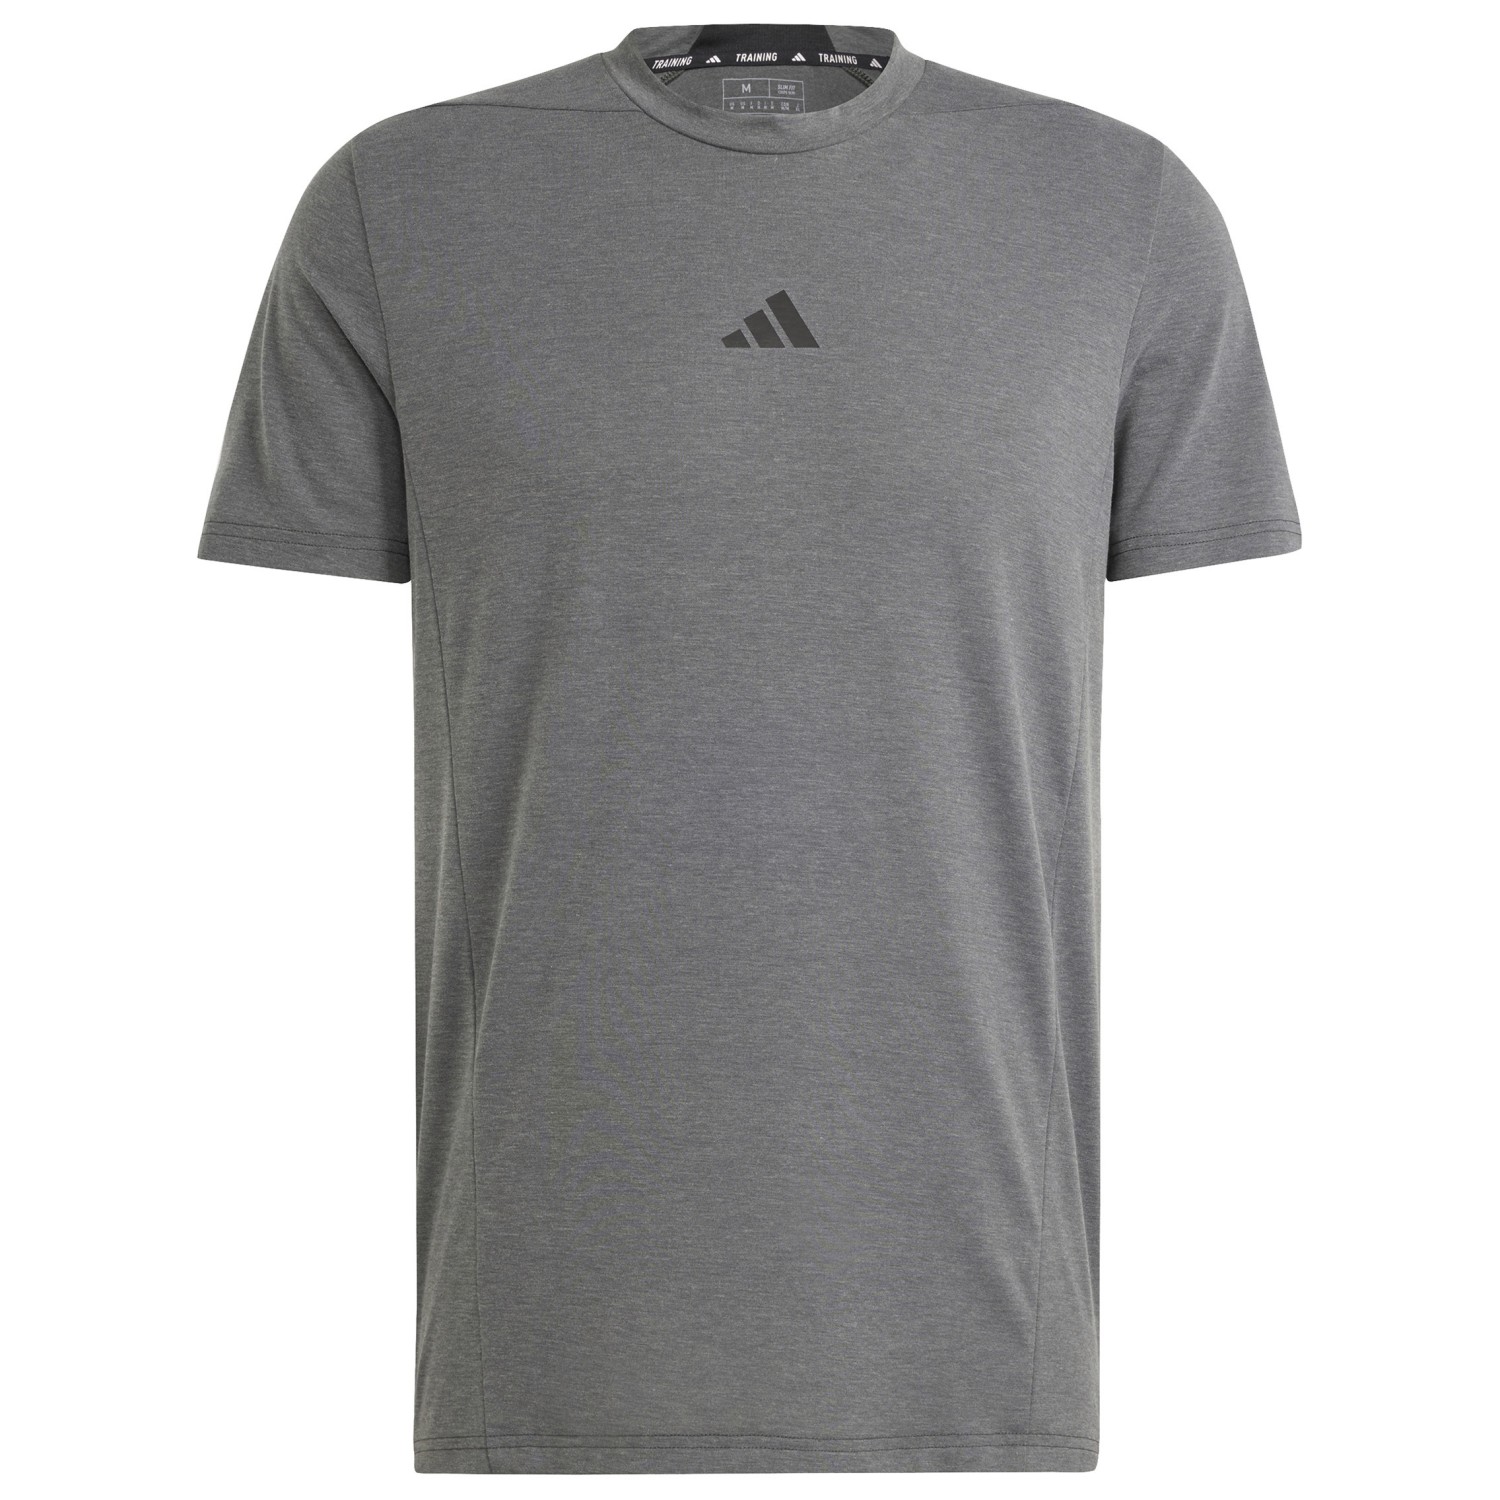 Функциональная рубашка Adidas Dessigned 4 Training Tee, цвет DGH Solid Grey шорты для плавания clrdo adidas originals цвет dgh solid grey black